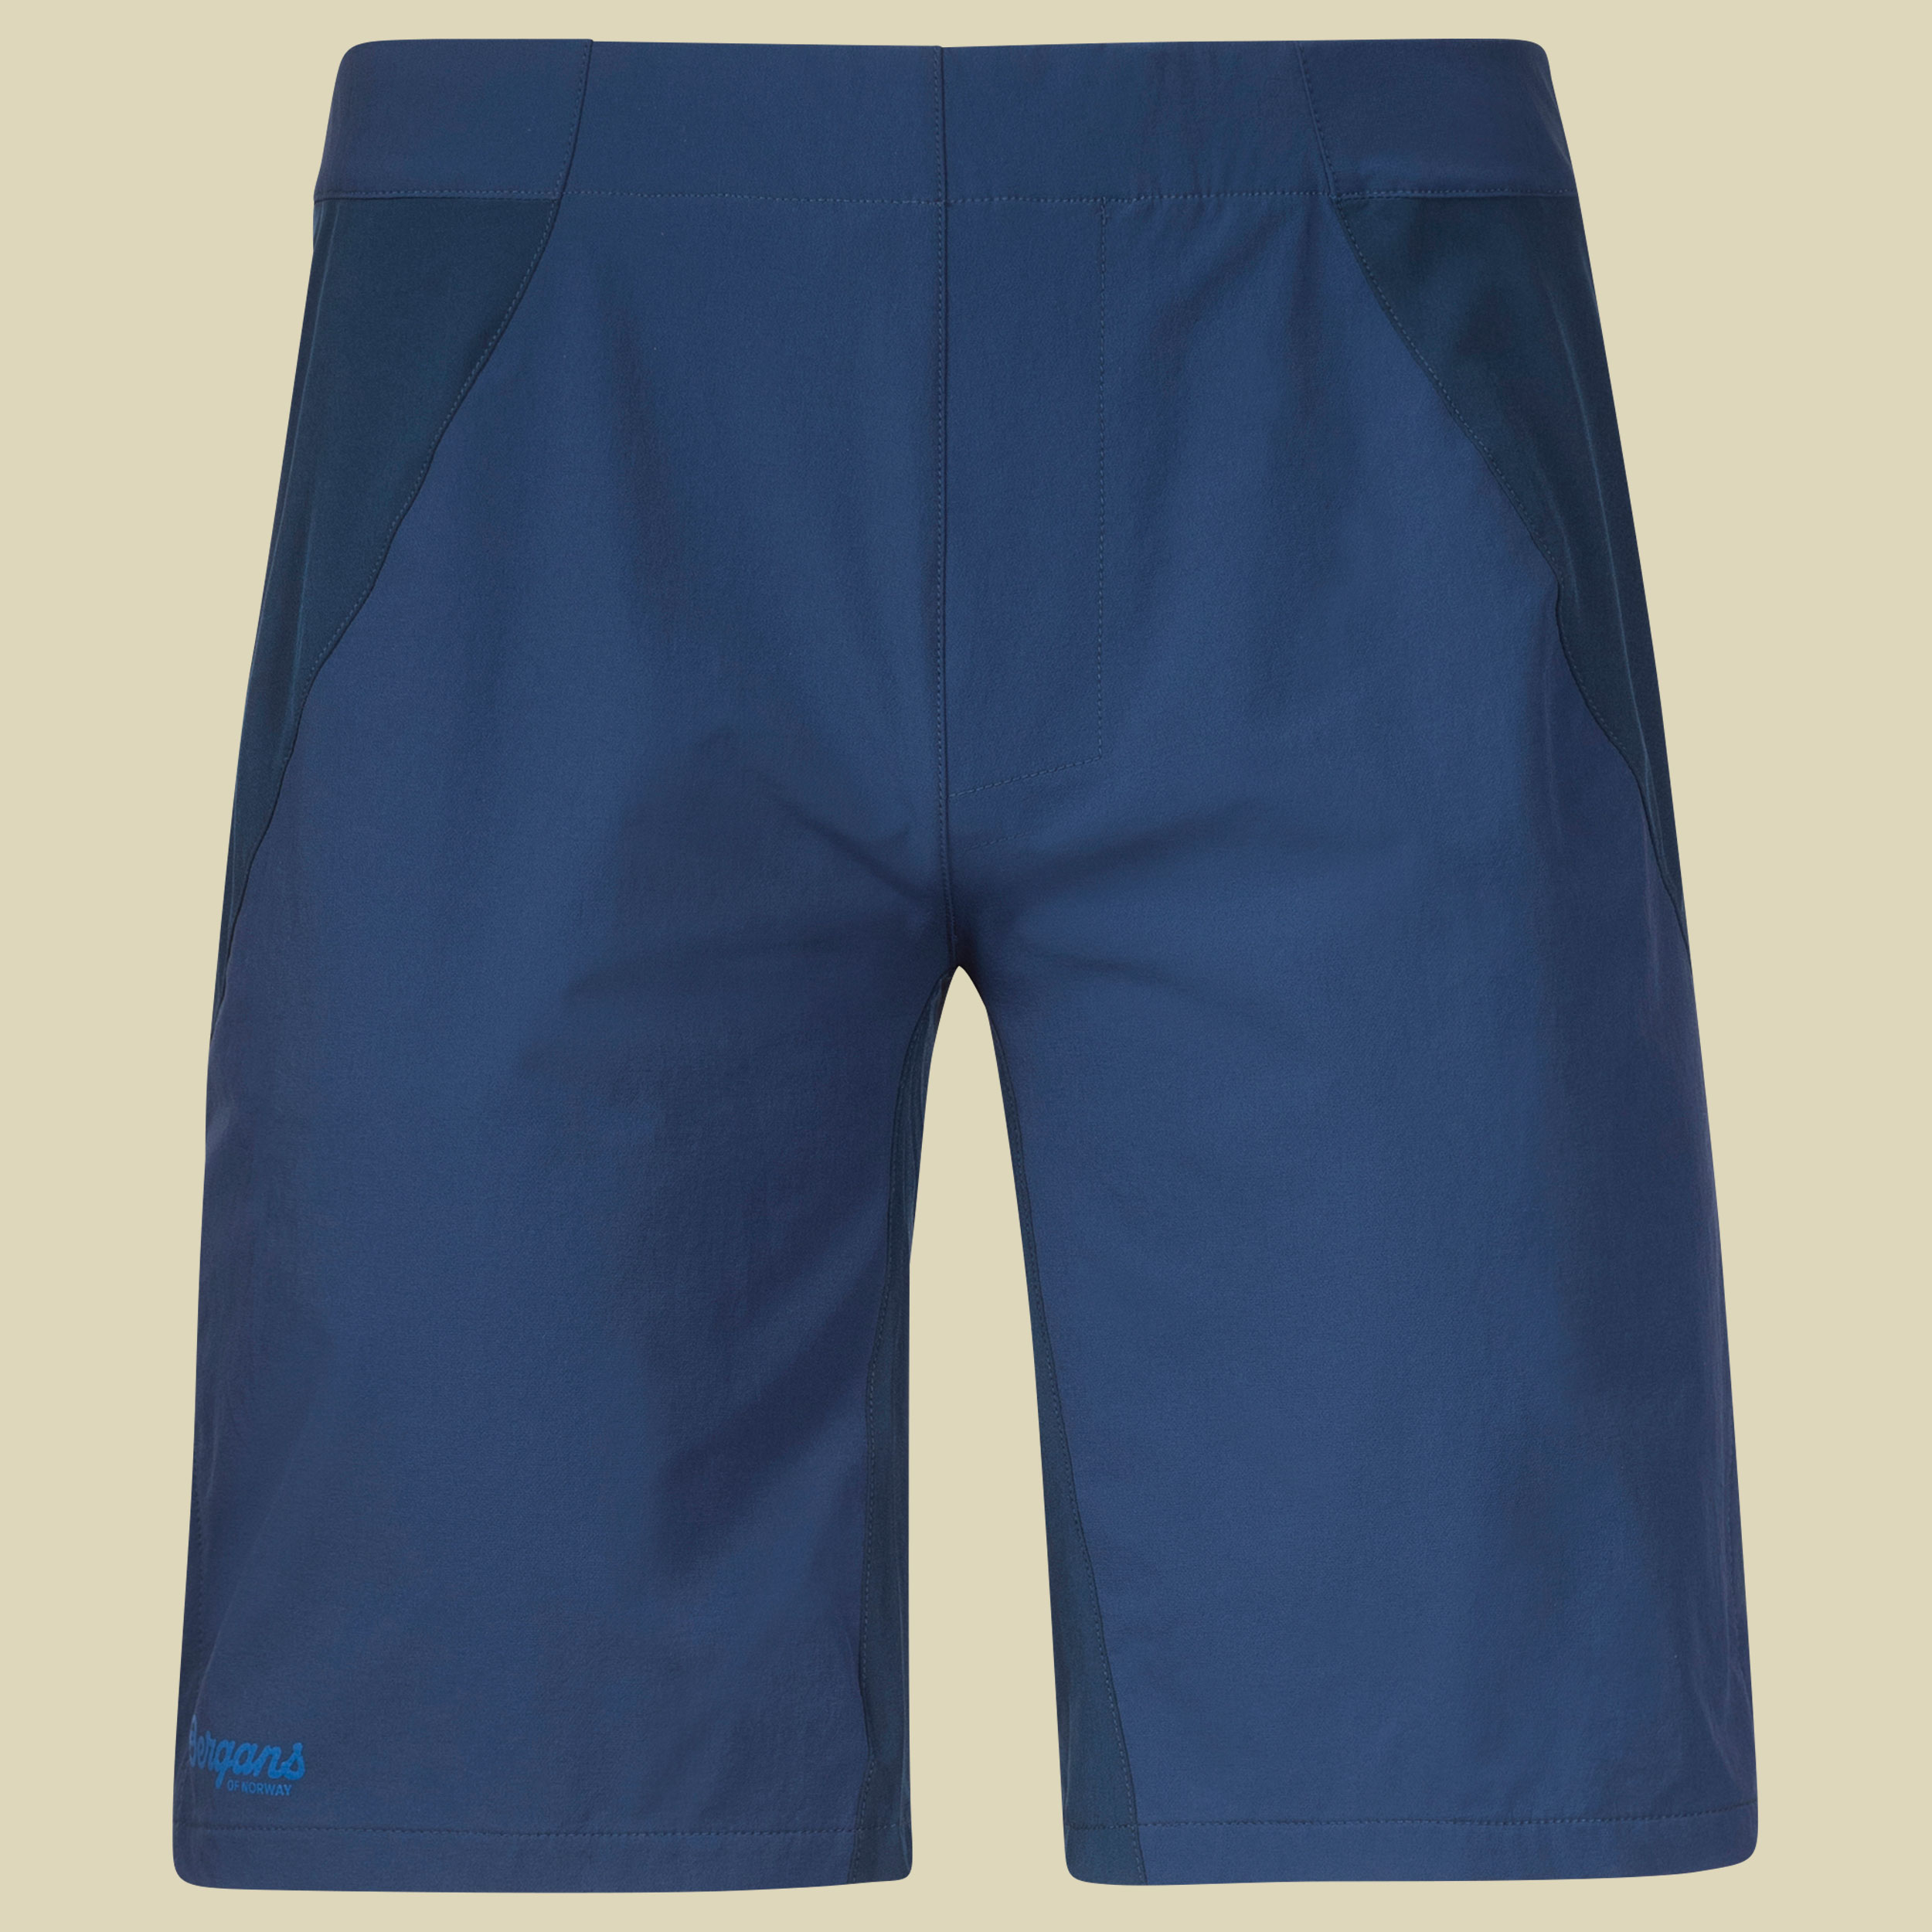 Floyen Shorts Men Größe M Farbe dark steel blue/fjord